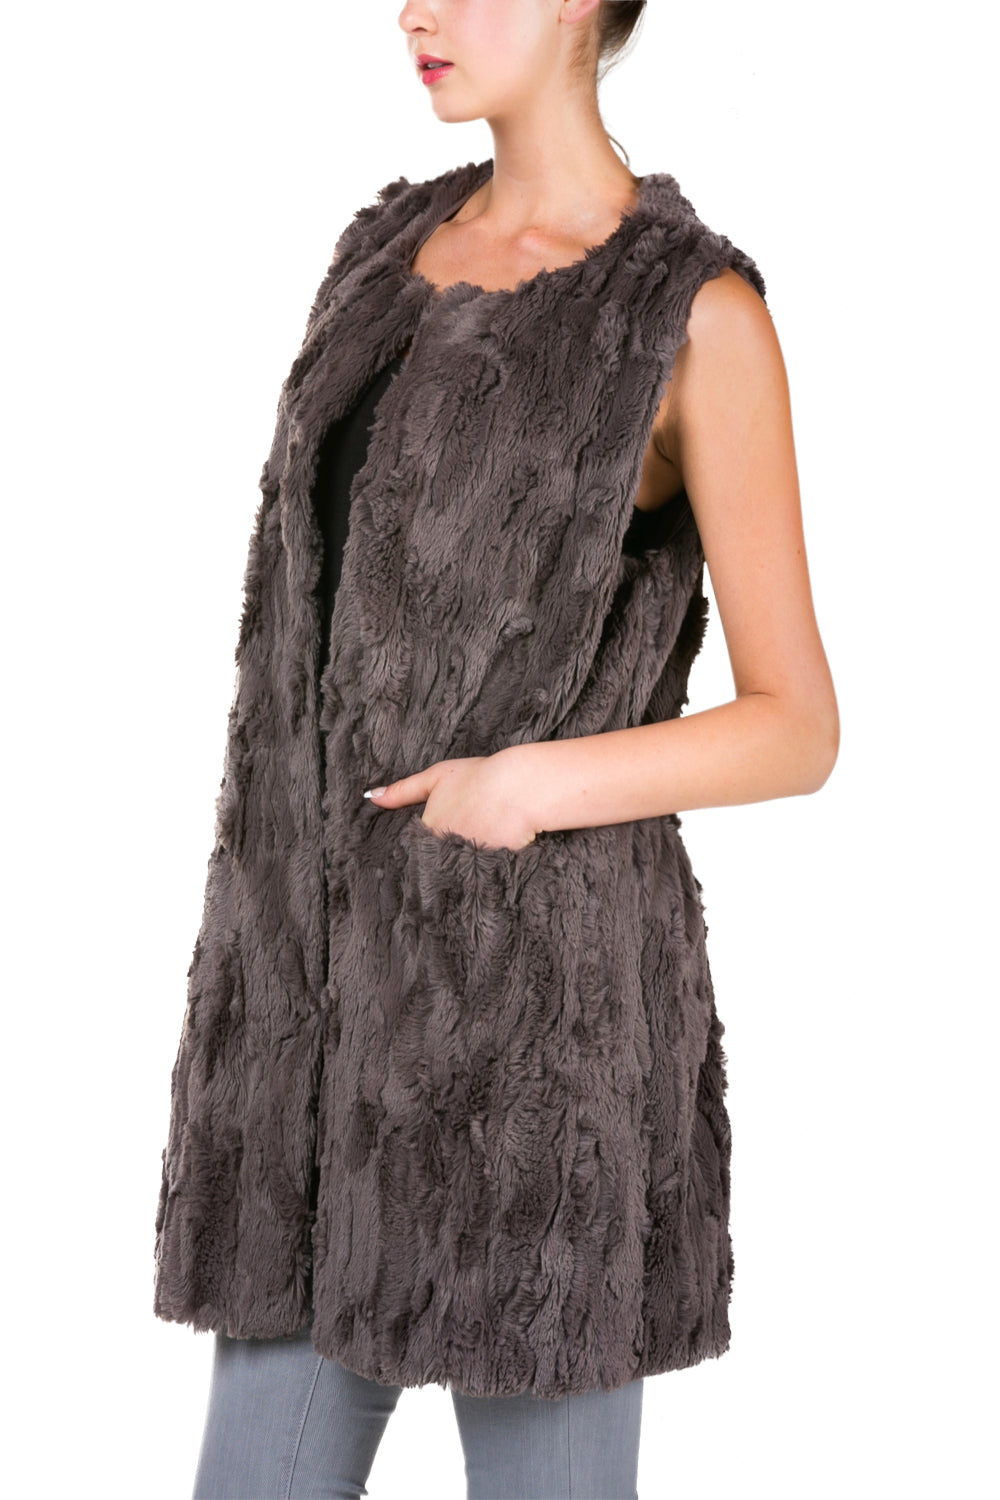 Women's Faux Fur Long Vest with Pocket on the Front - Shop Lev